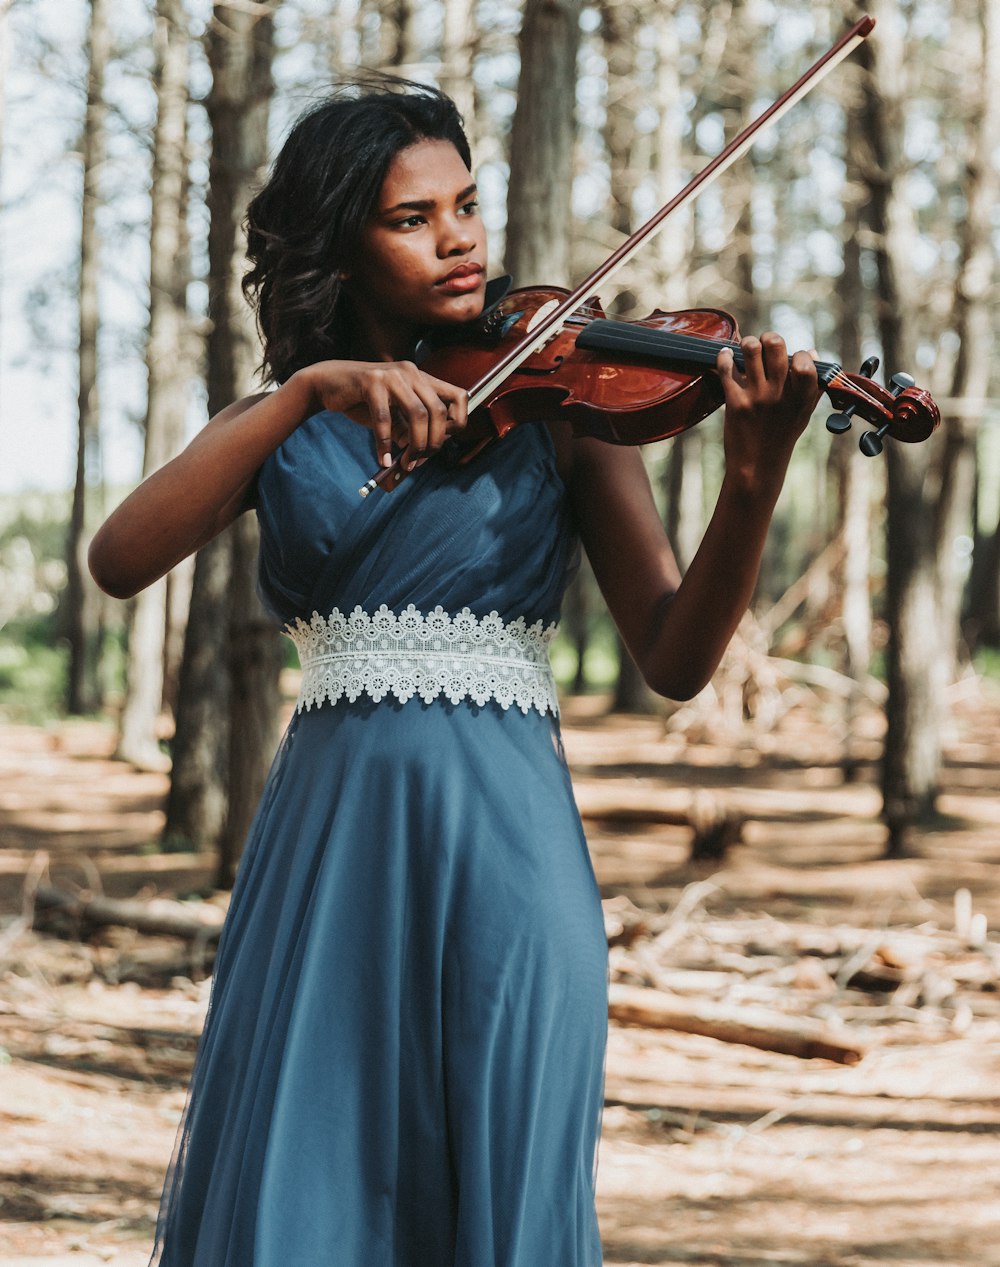 Eine Frau im blauen Kleid spielt Geige